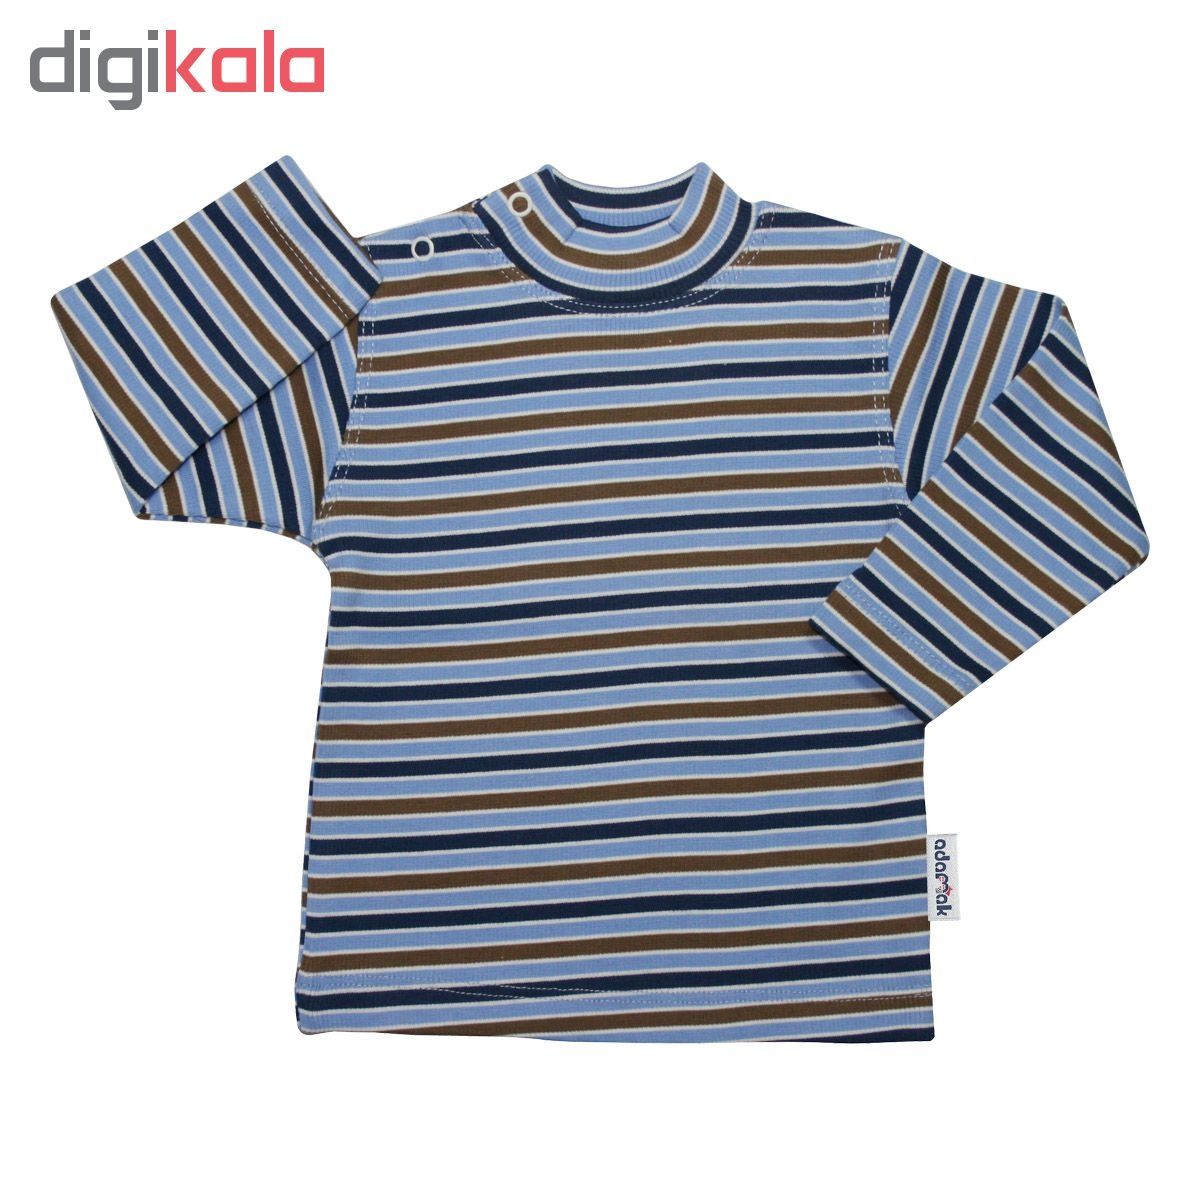  تی شرت آستین بلند نوزادی آدمک کد 01-143201 -  - 2